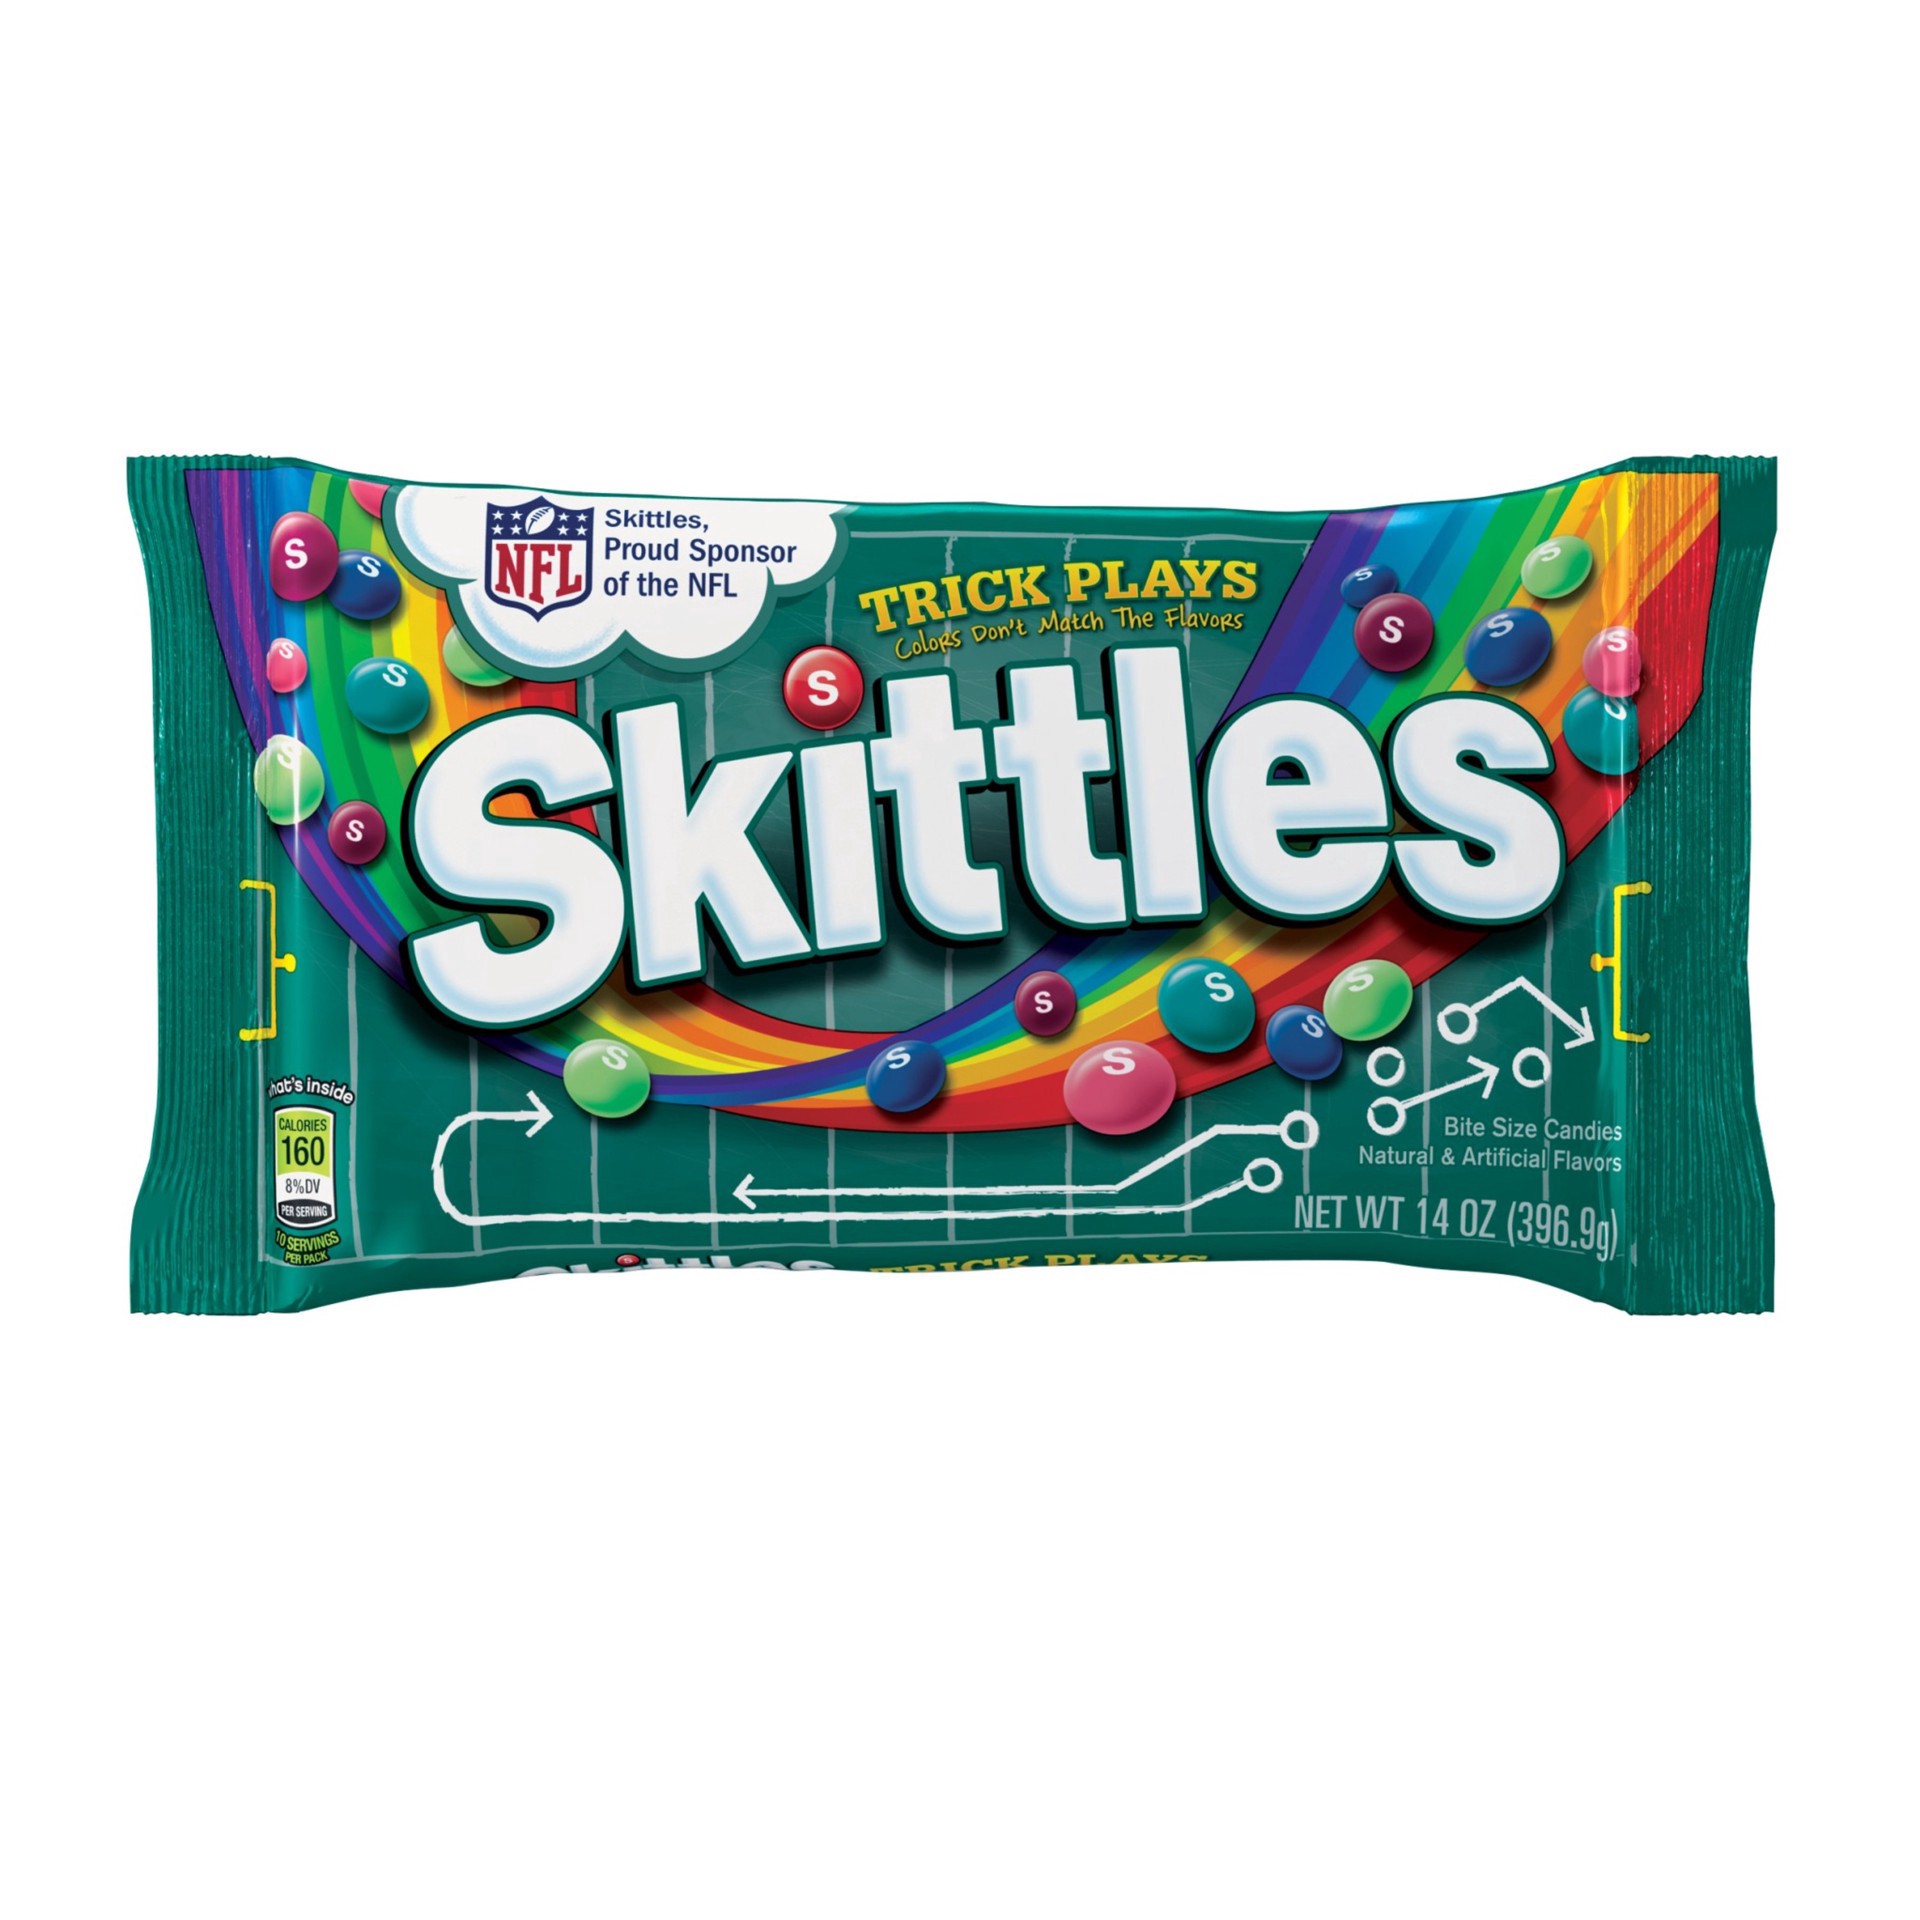 Skittles - Original Bag 15g x 10 Bags 150g delivery in Hong Kong | foodpanda